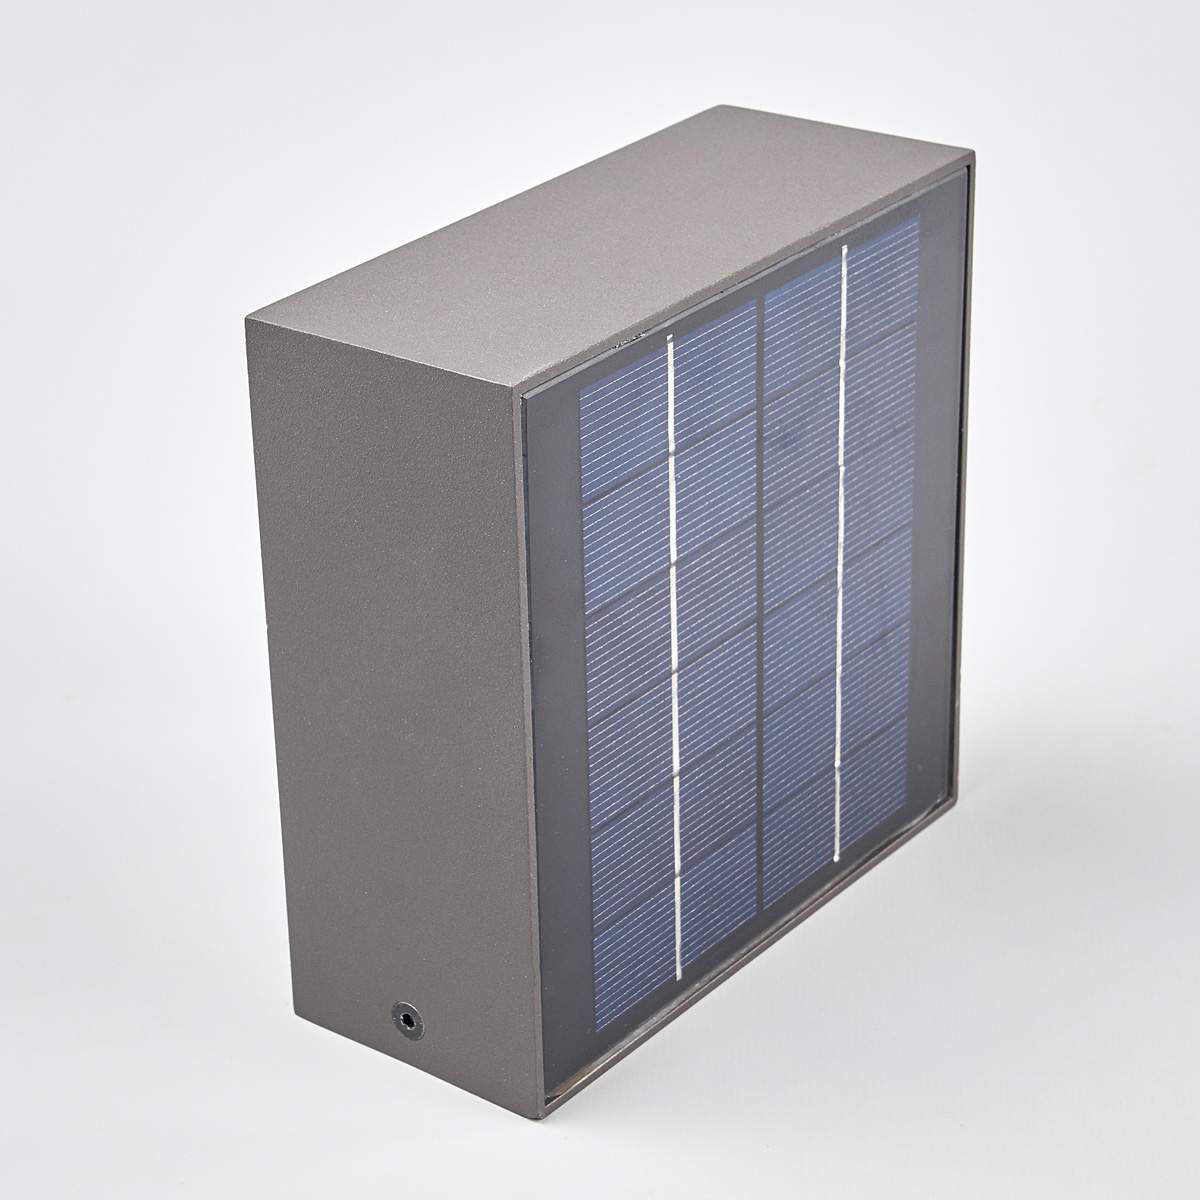 Solar-Led-Außenwandleuchte Mahra mit Bewegungsmelder, 6x14,5x14,5 cm, Aluminium, grau
| #6